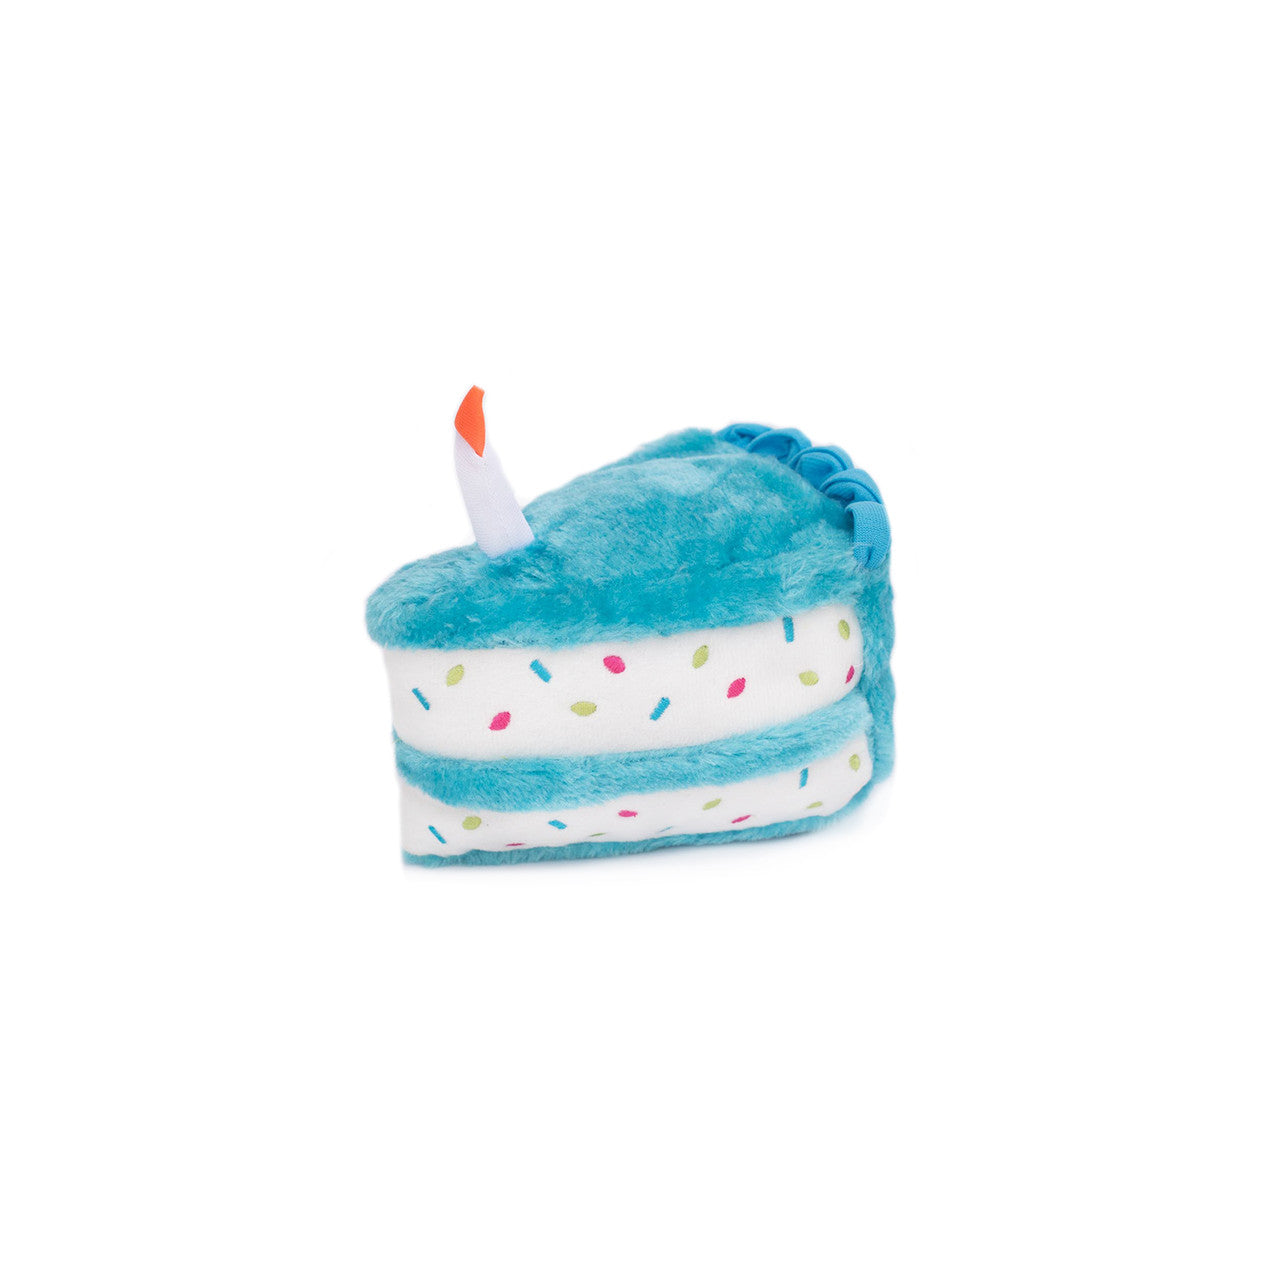 ZippyPaws Birthday Cake Dog Toy Blue MD